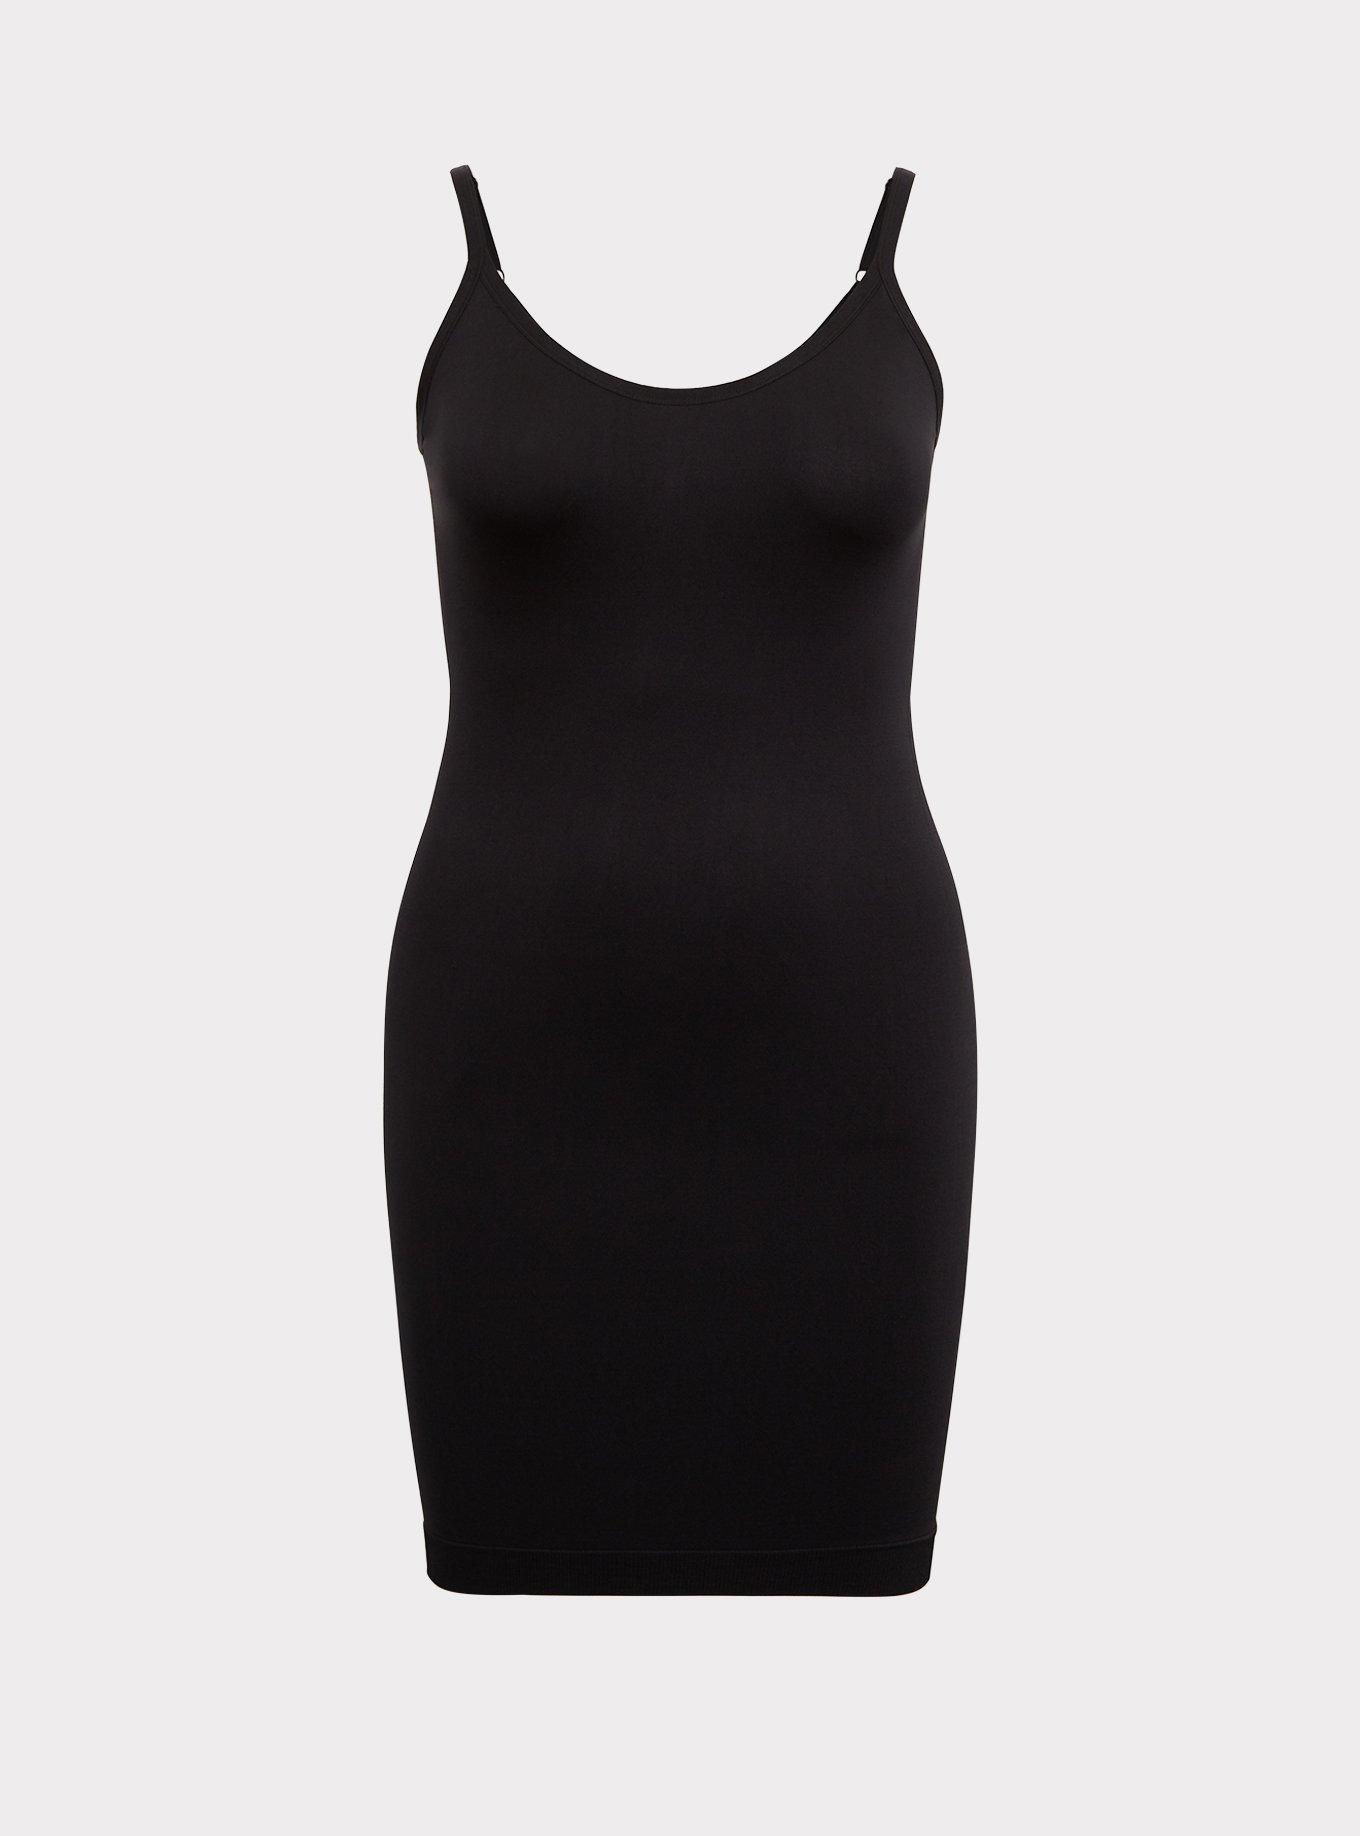 Plus Size - Seamless 360° Smoothing Slip Dress - Torrid